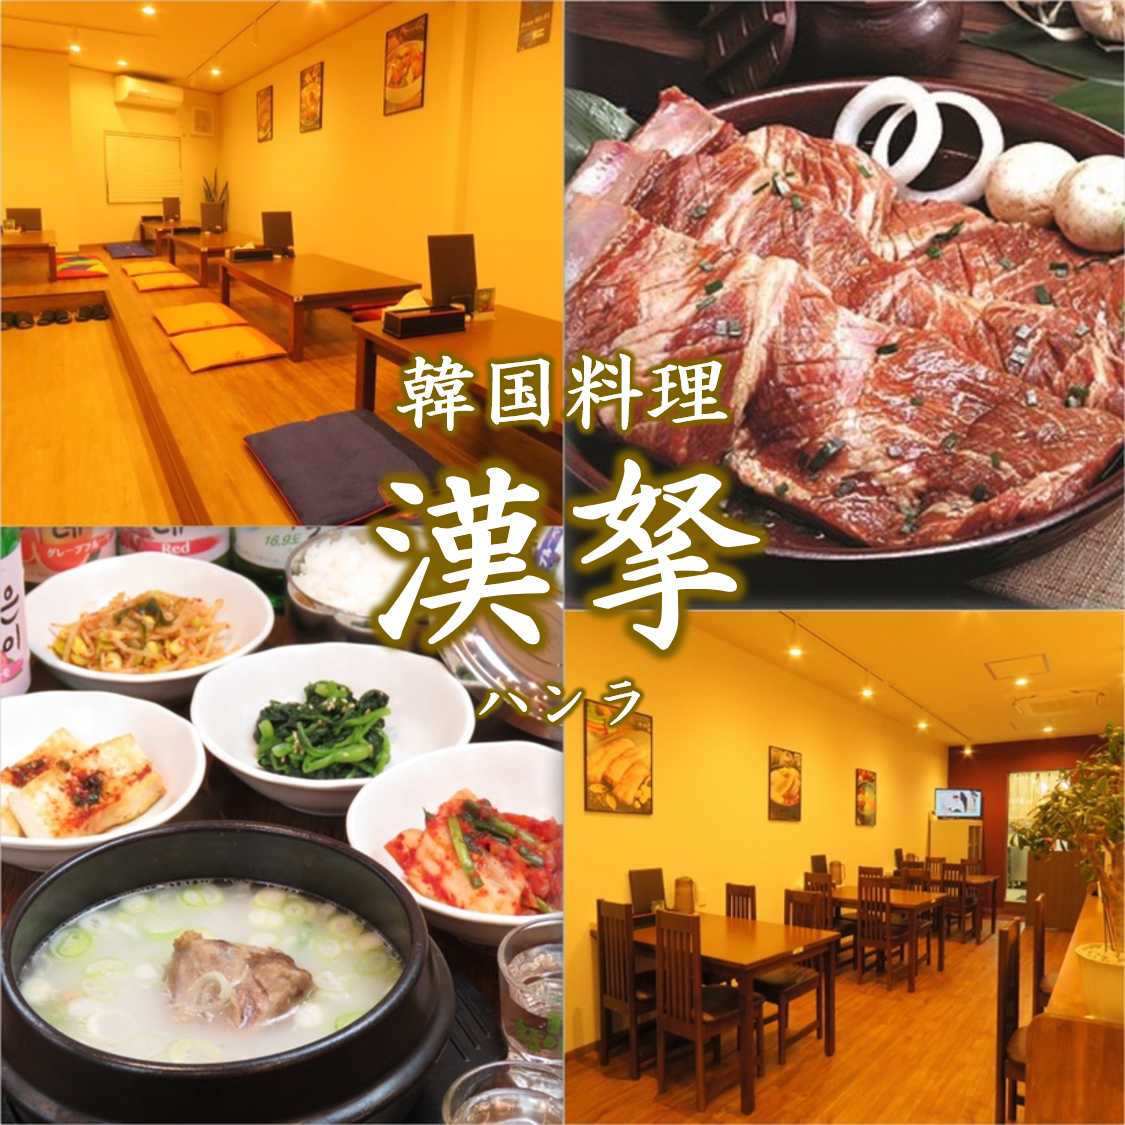 如果您想在Fuse中享受正宗的韩国风味，请去Hanla！这里还有适合宴会的正餐♪